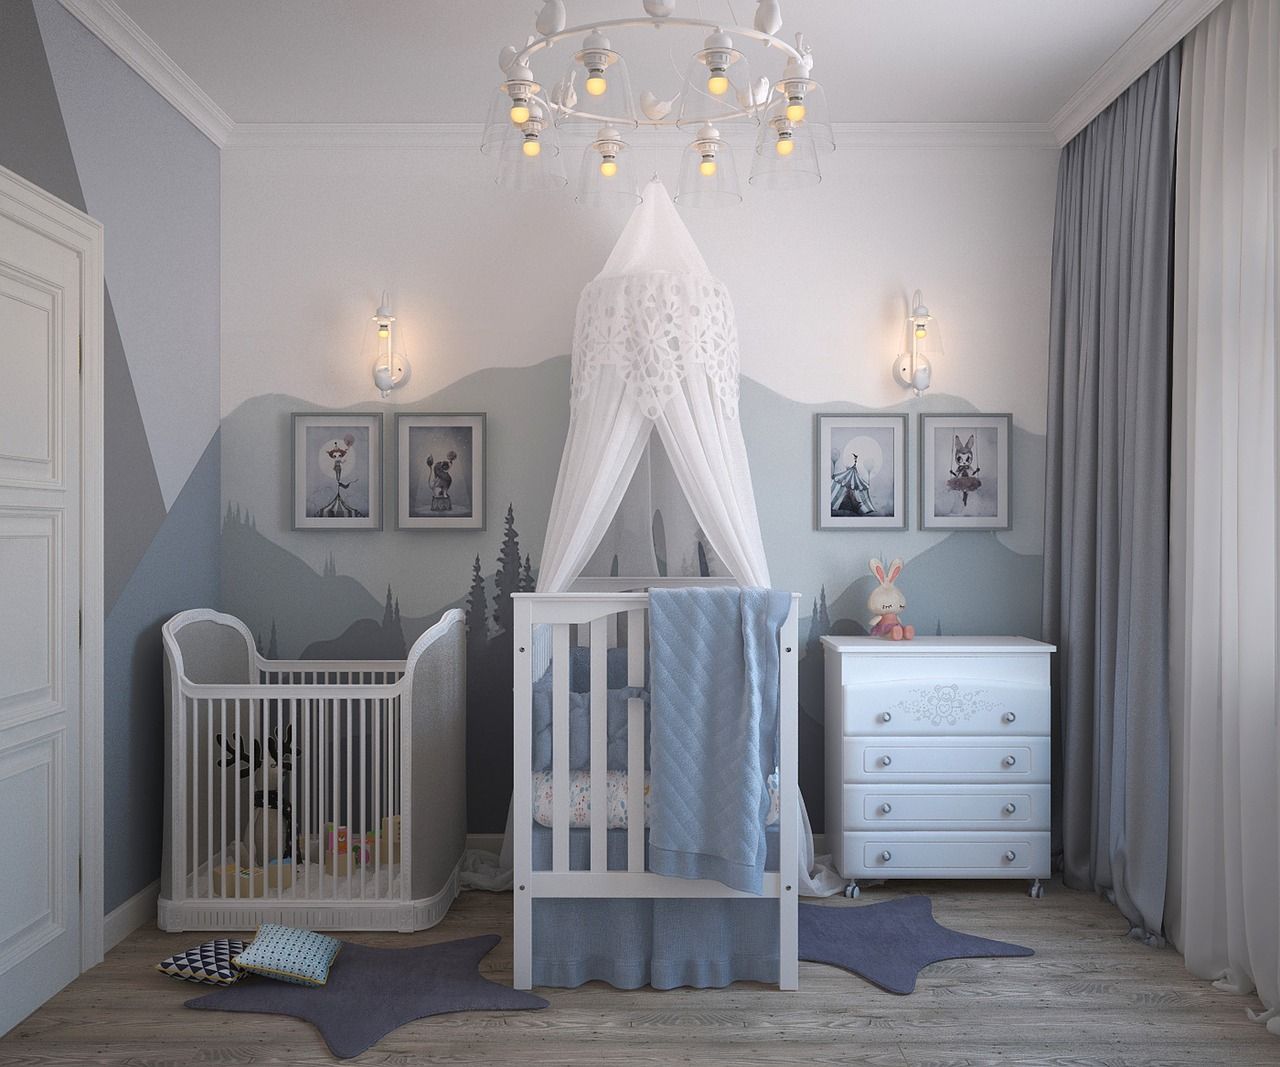 Jak przygotować pokój na narodziny dziecka?